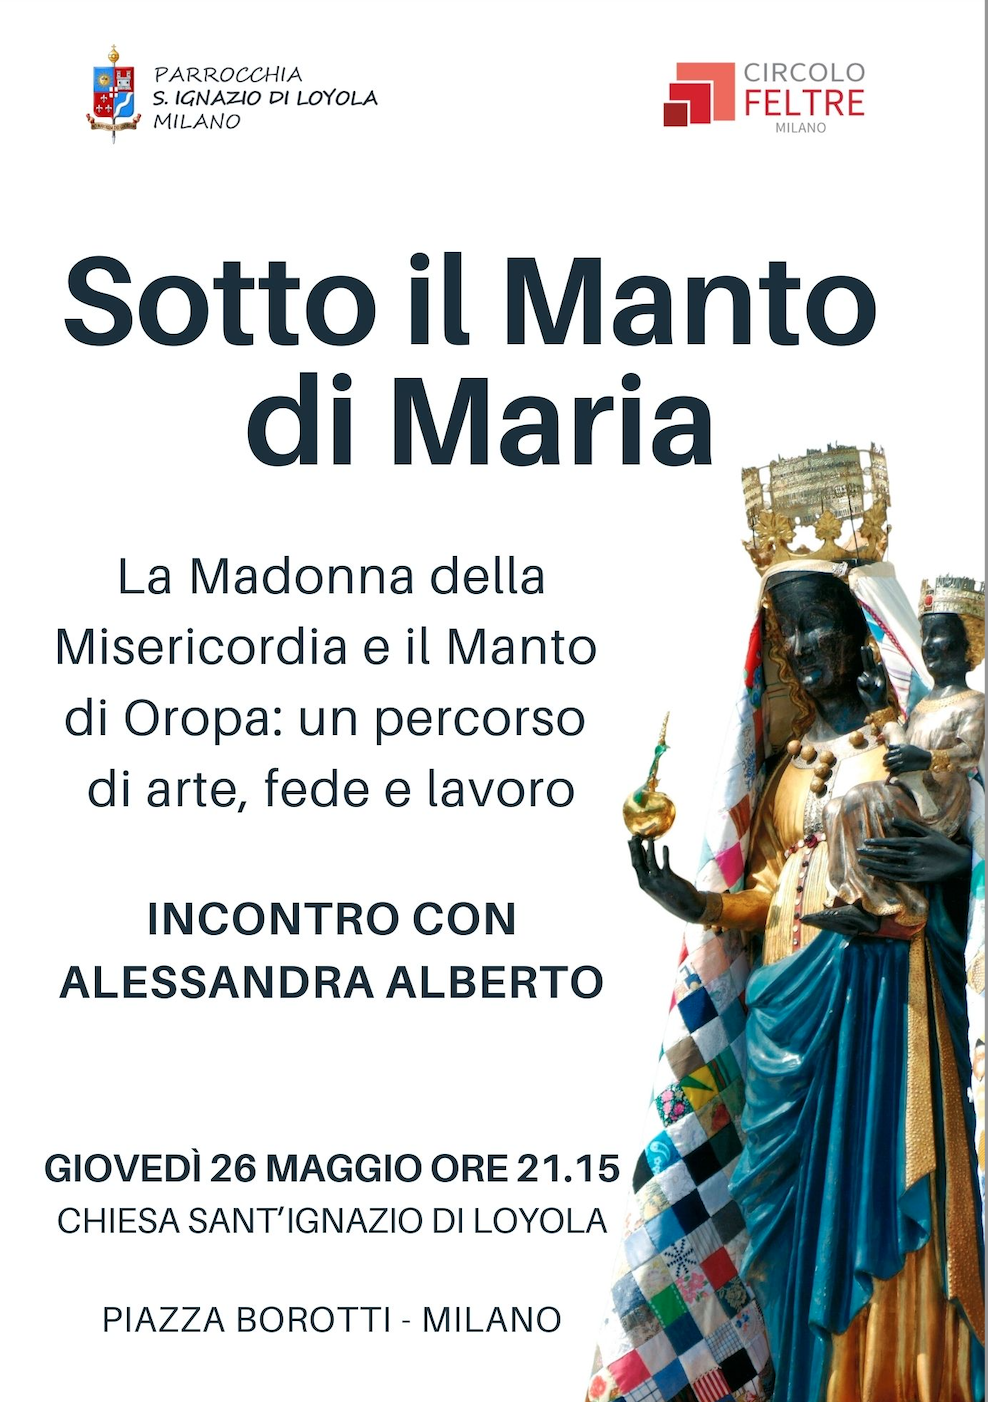 Featured image for “Milano: Sotto il manto di Maria”